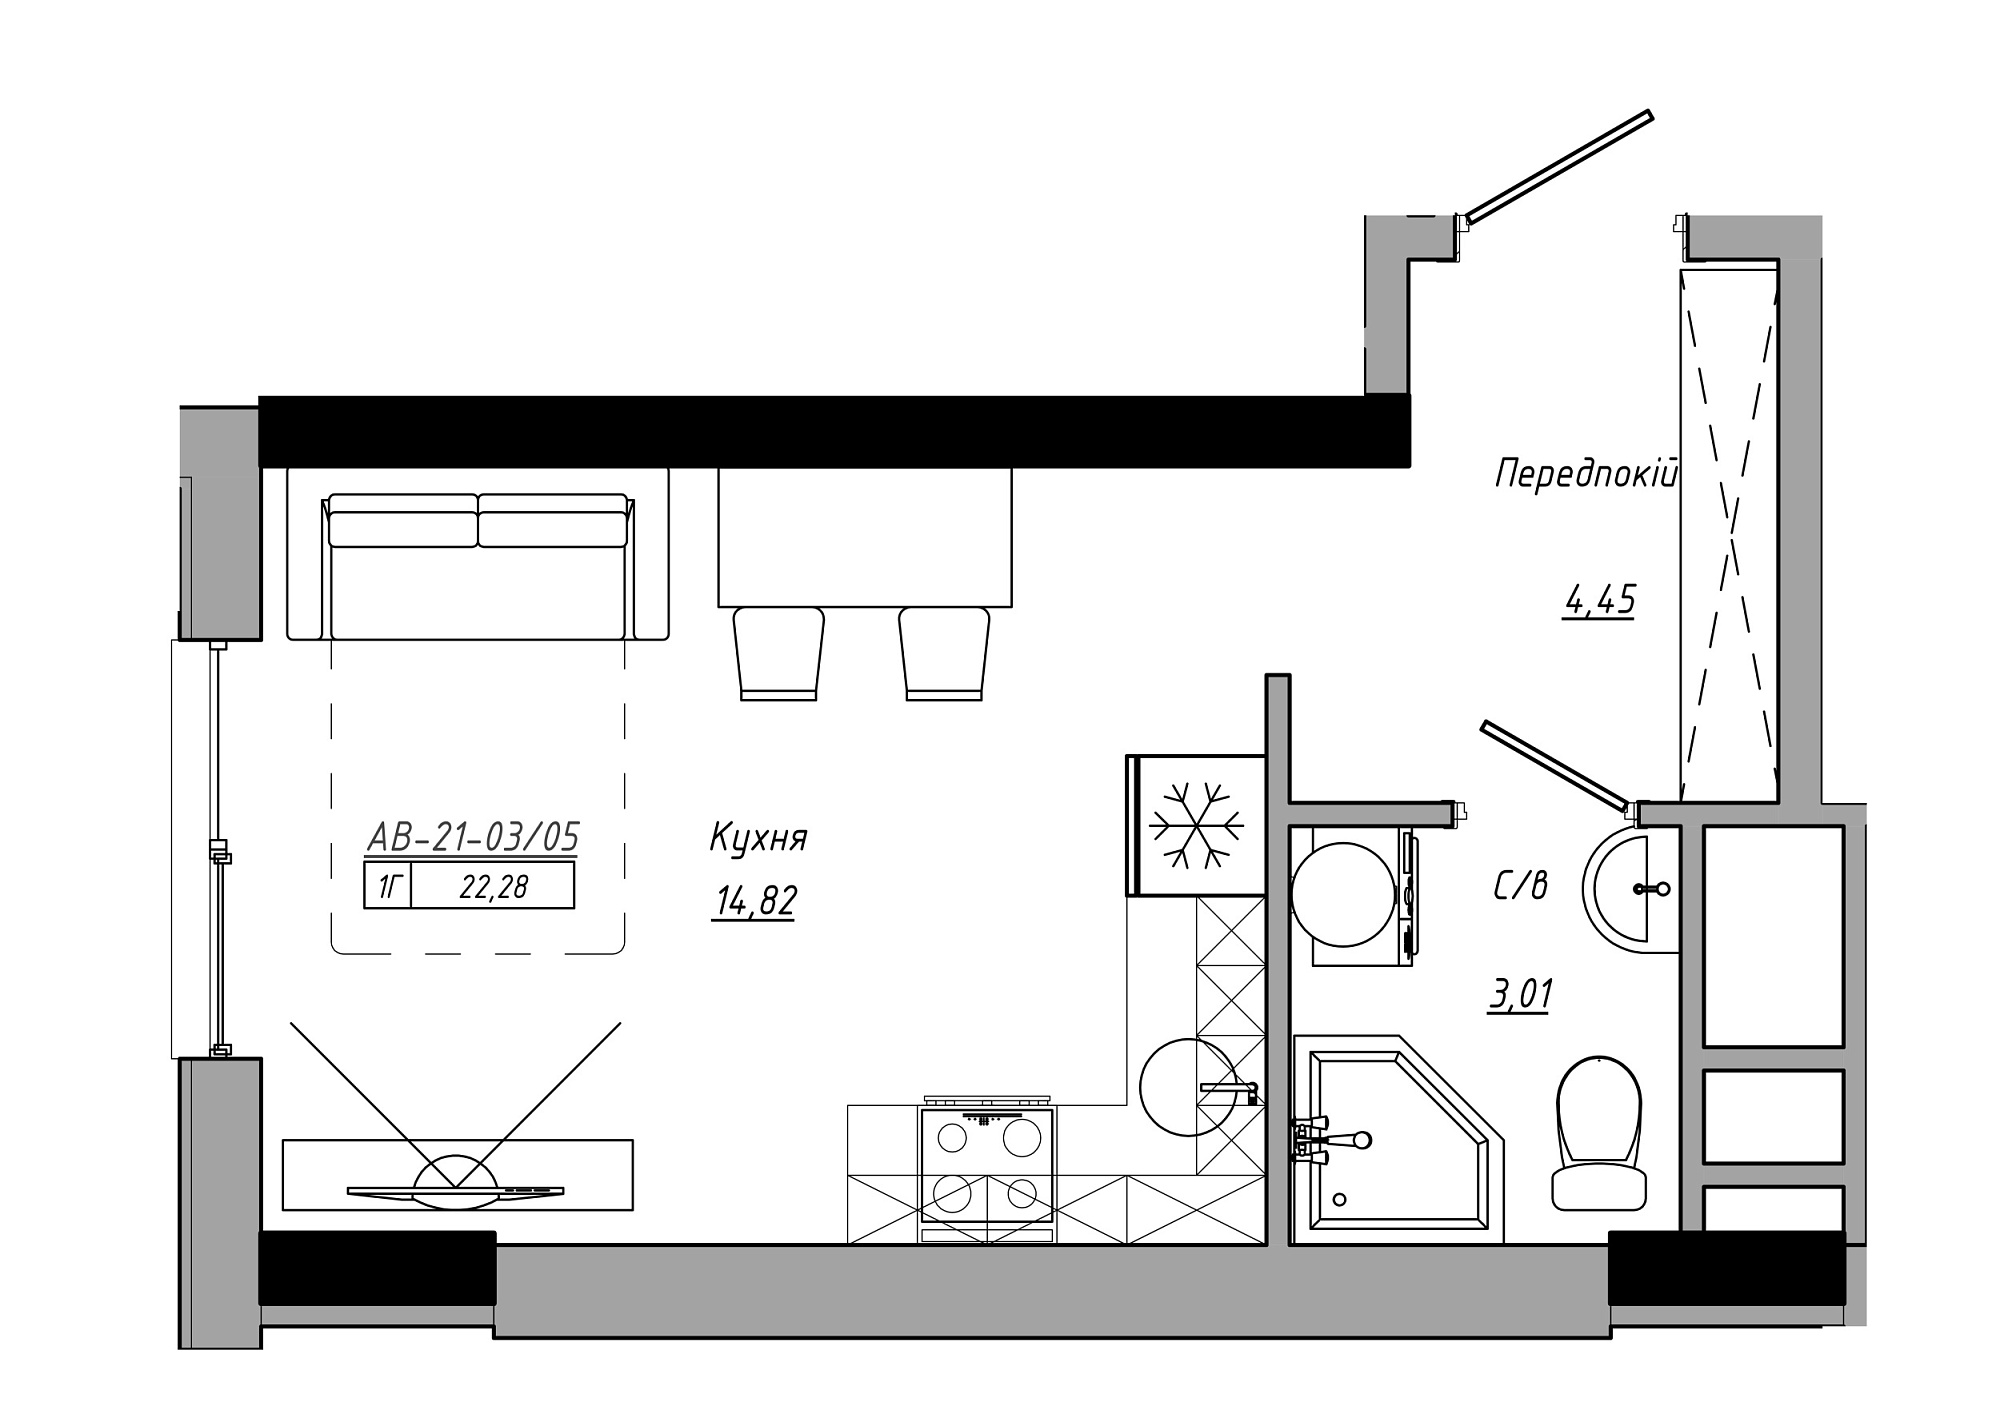 Планування Smart-квартира площею 22.28м2, AB-21-03/00005.